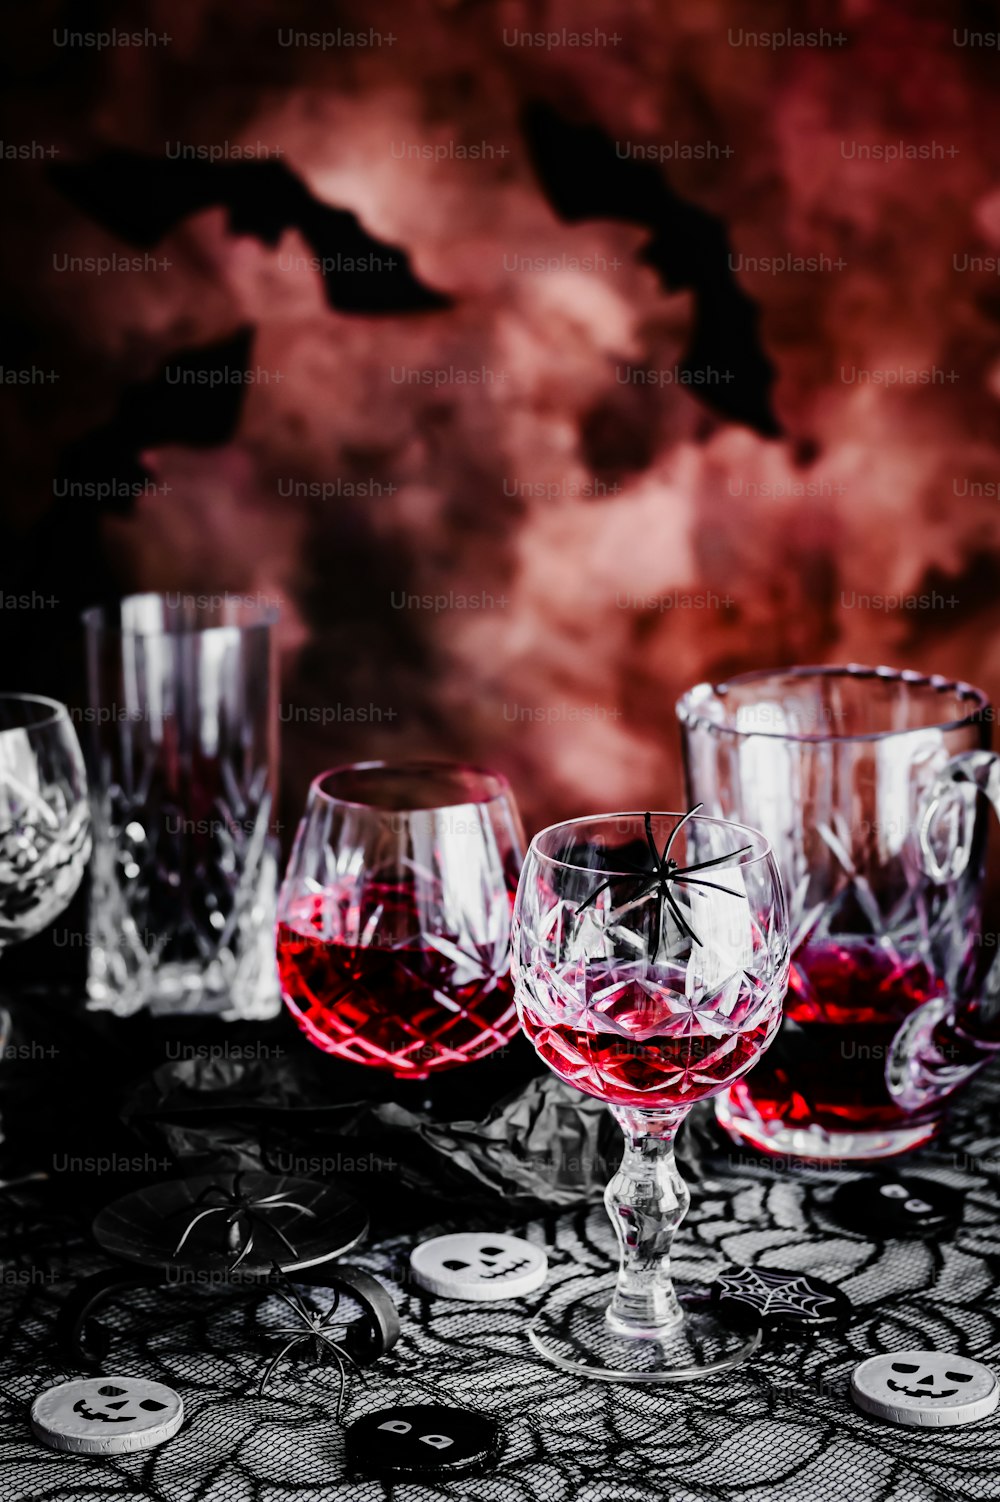 테이블 위에 앉아 있는 한 무리의 와인잔